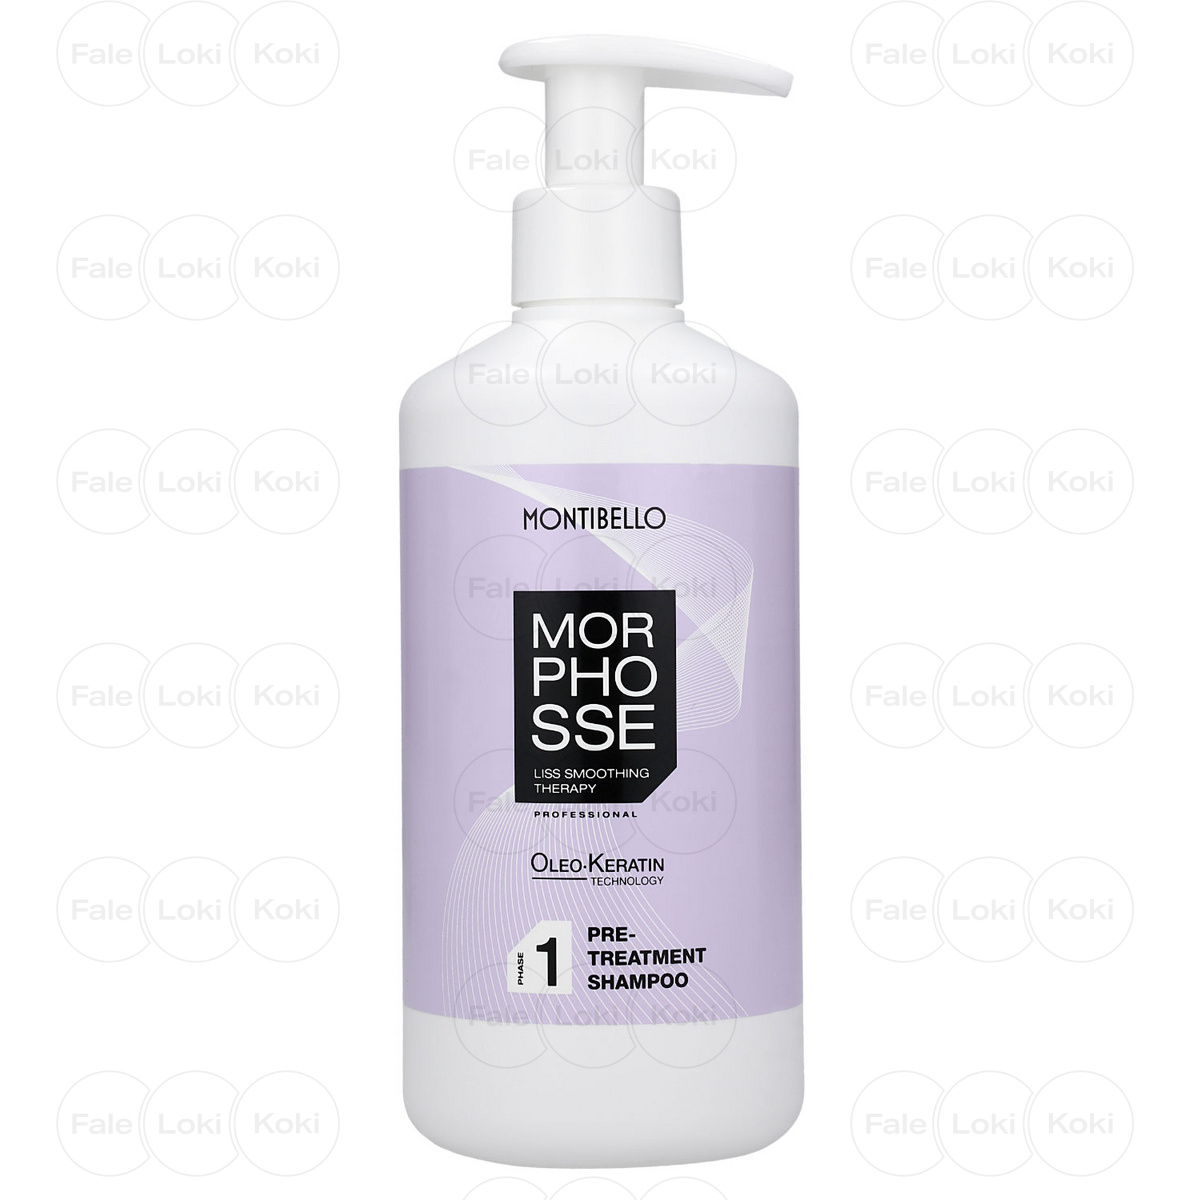 MONTIBELLO MORPHOSSE szampon do włosów przed zabiegiem 1 500 ml